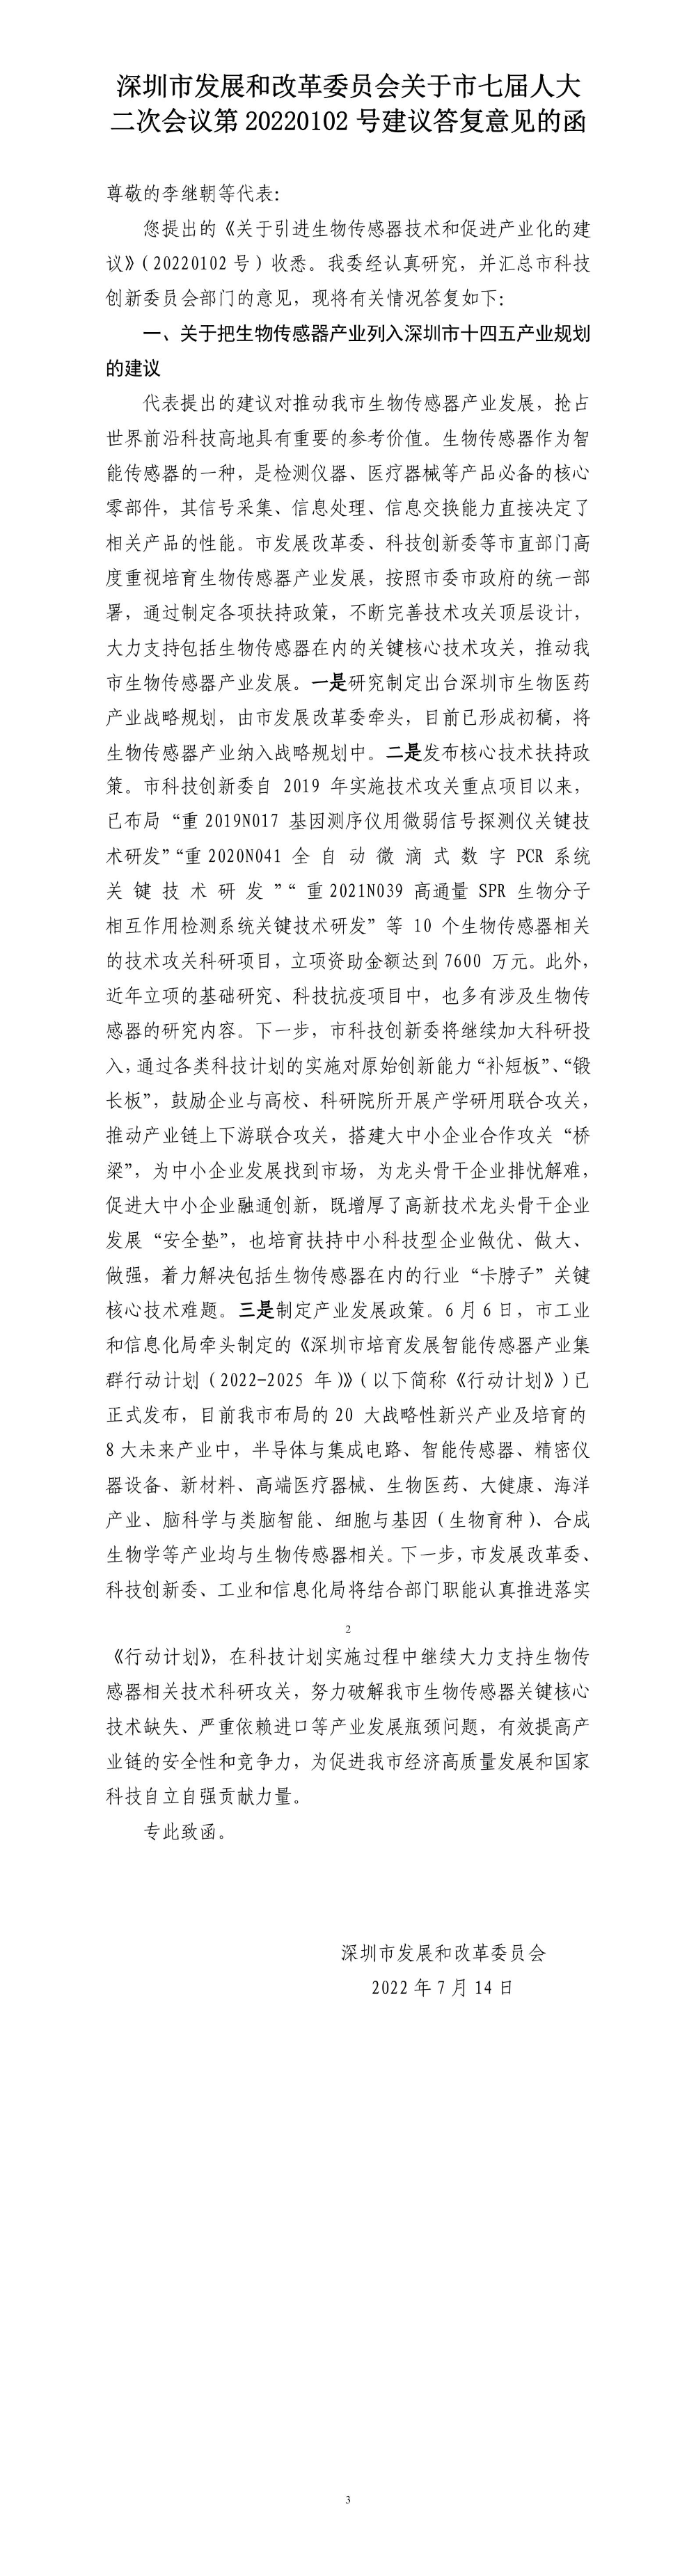 深圳市发展和改革委员会关于市七届人大二次会议第20220102号建议答复意见的函.jpg